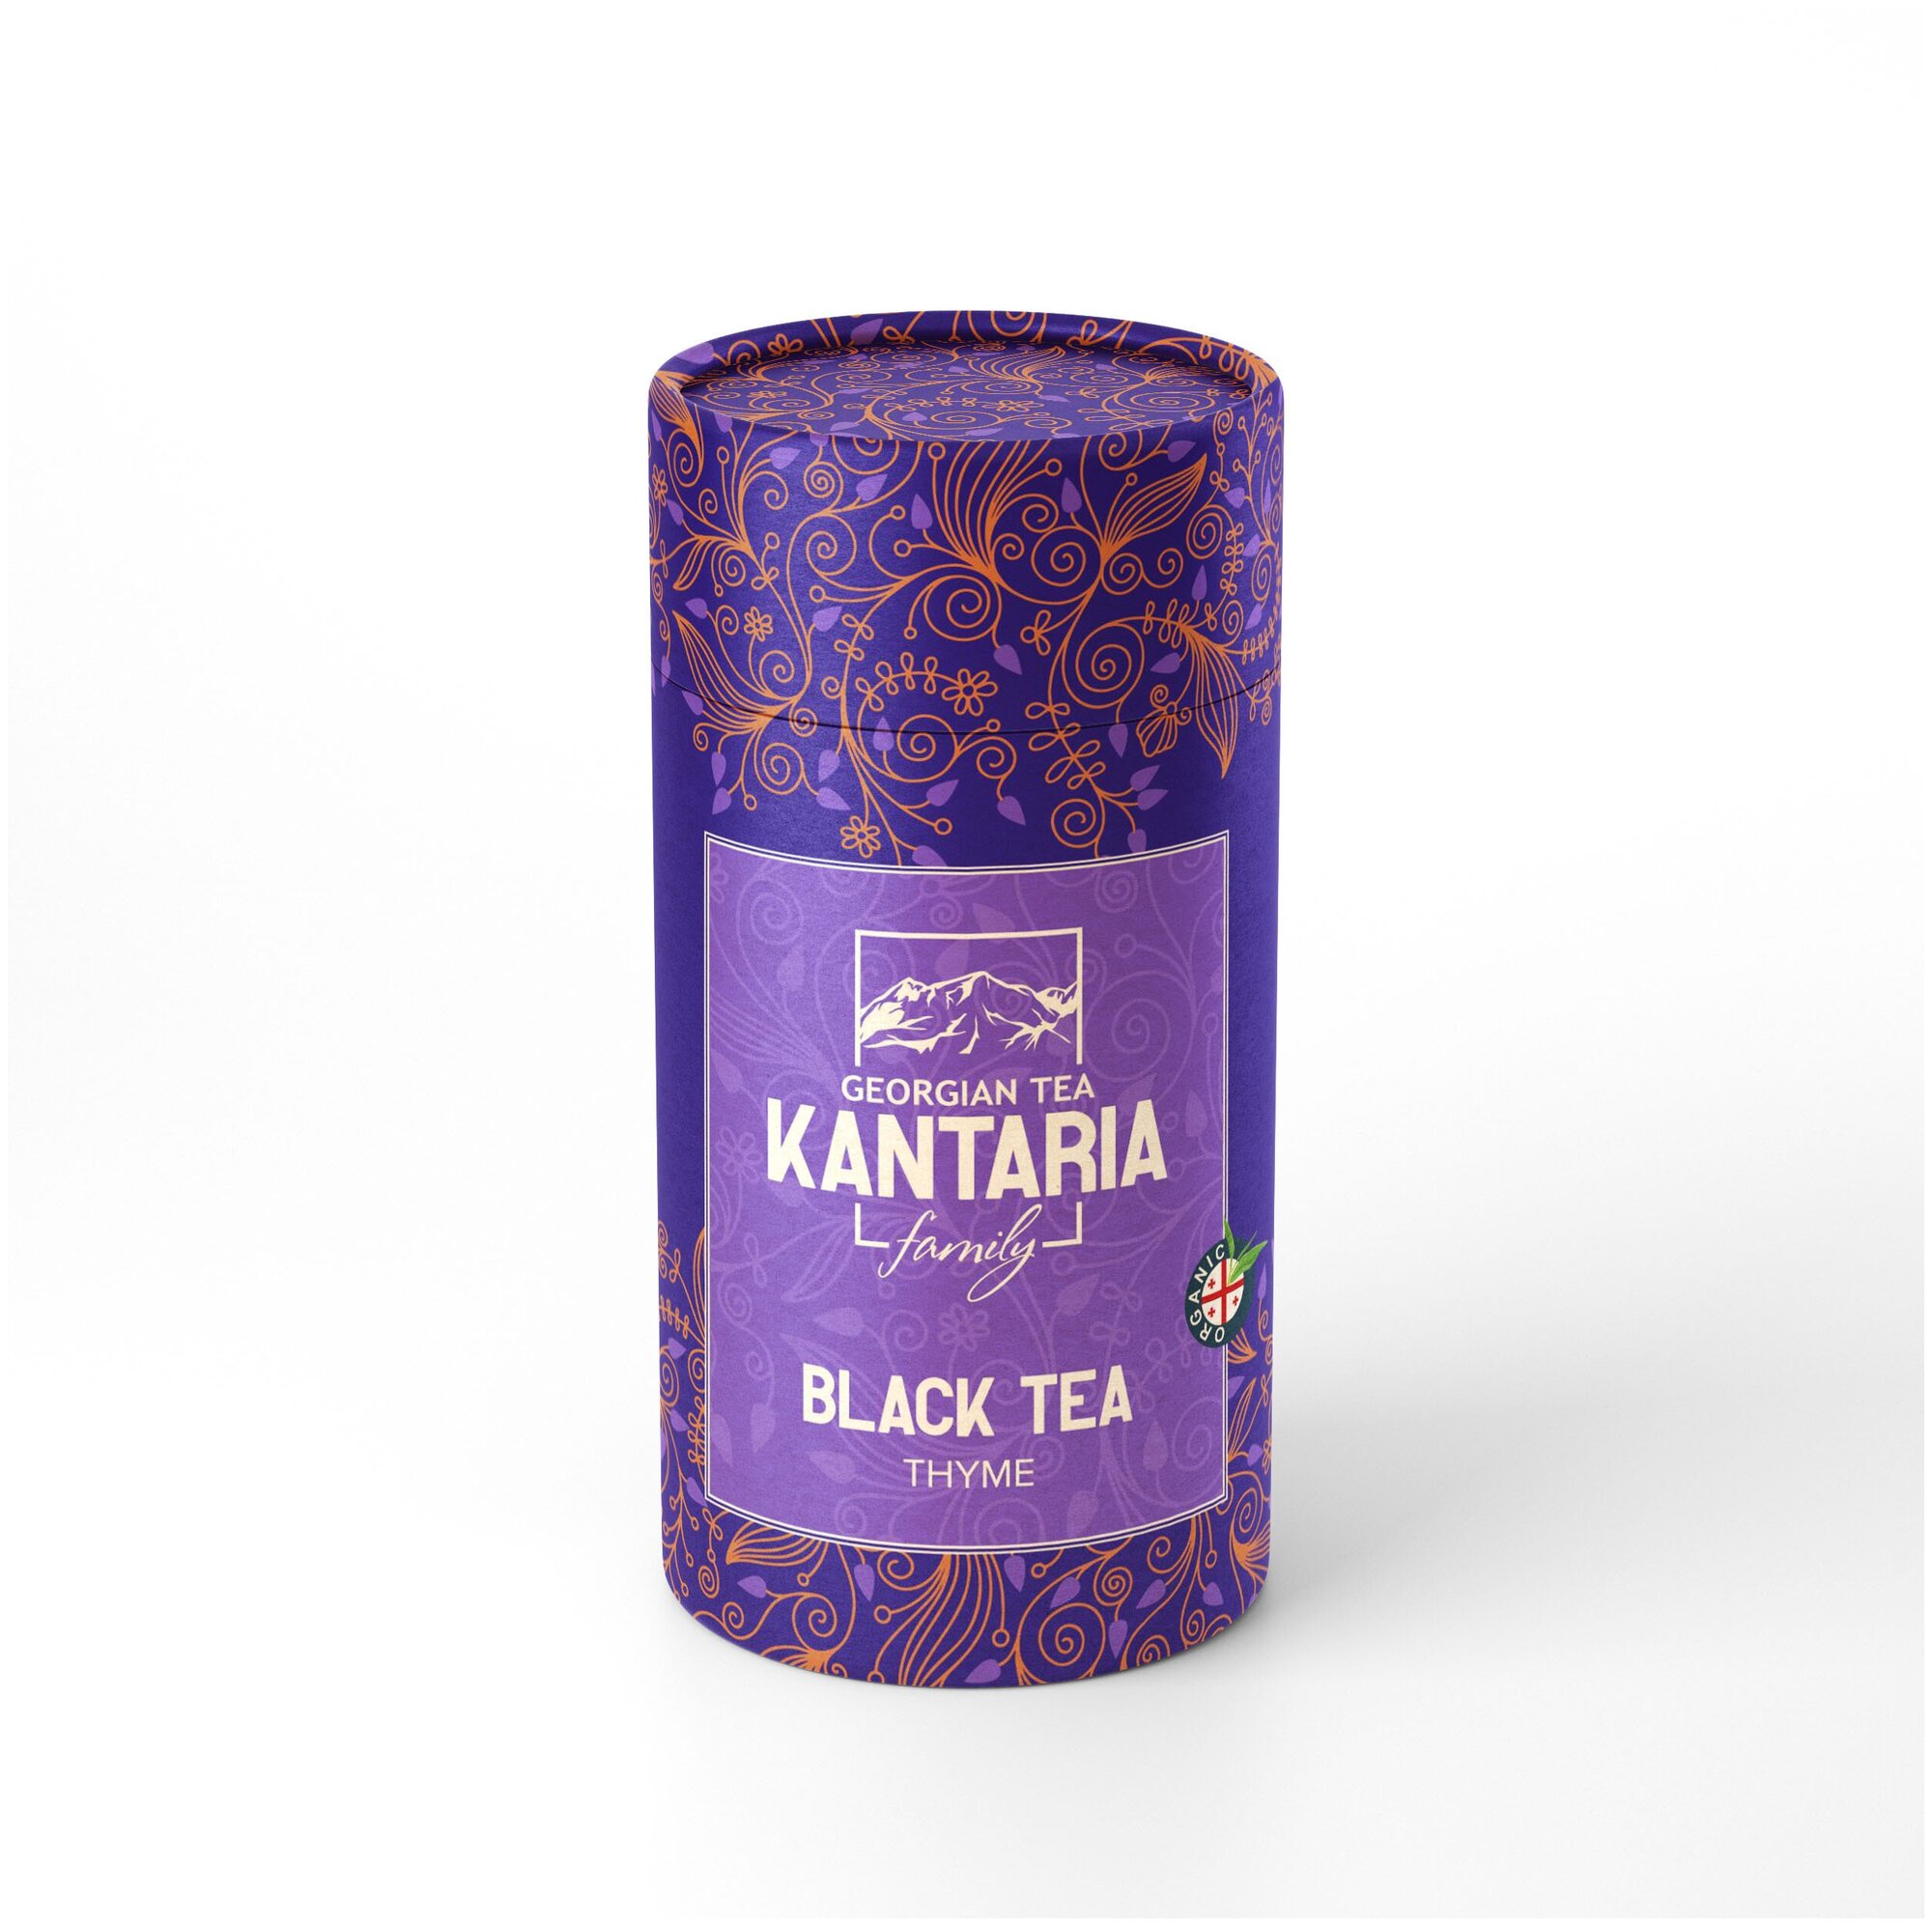 Черный листовой чай с чабрецом, в подарочной упаковке, 100гр, KANTARIA family